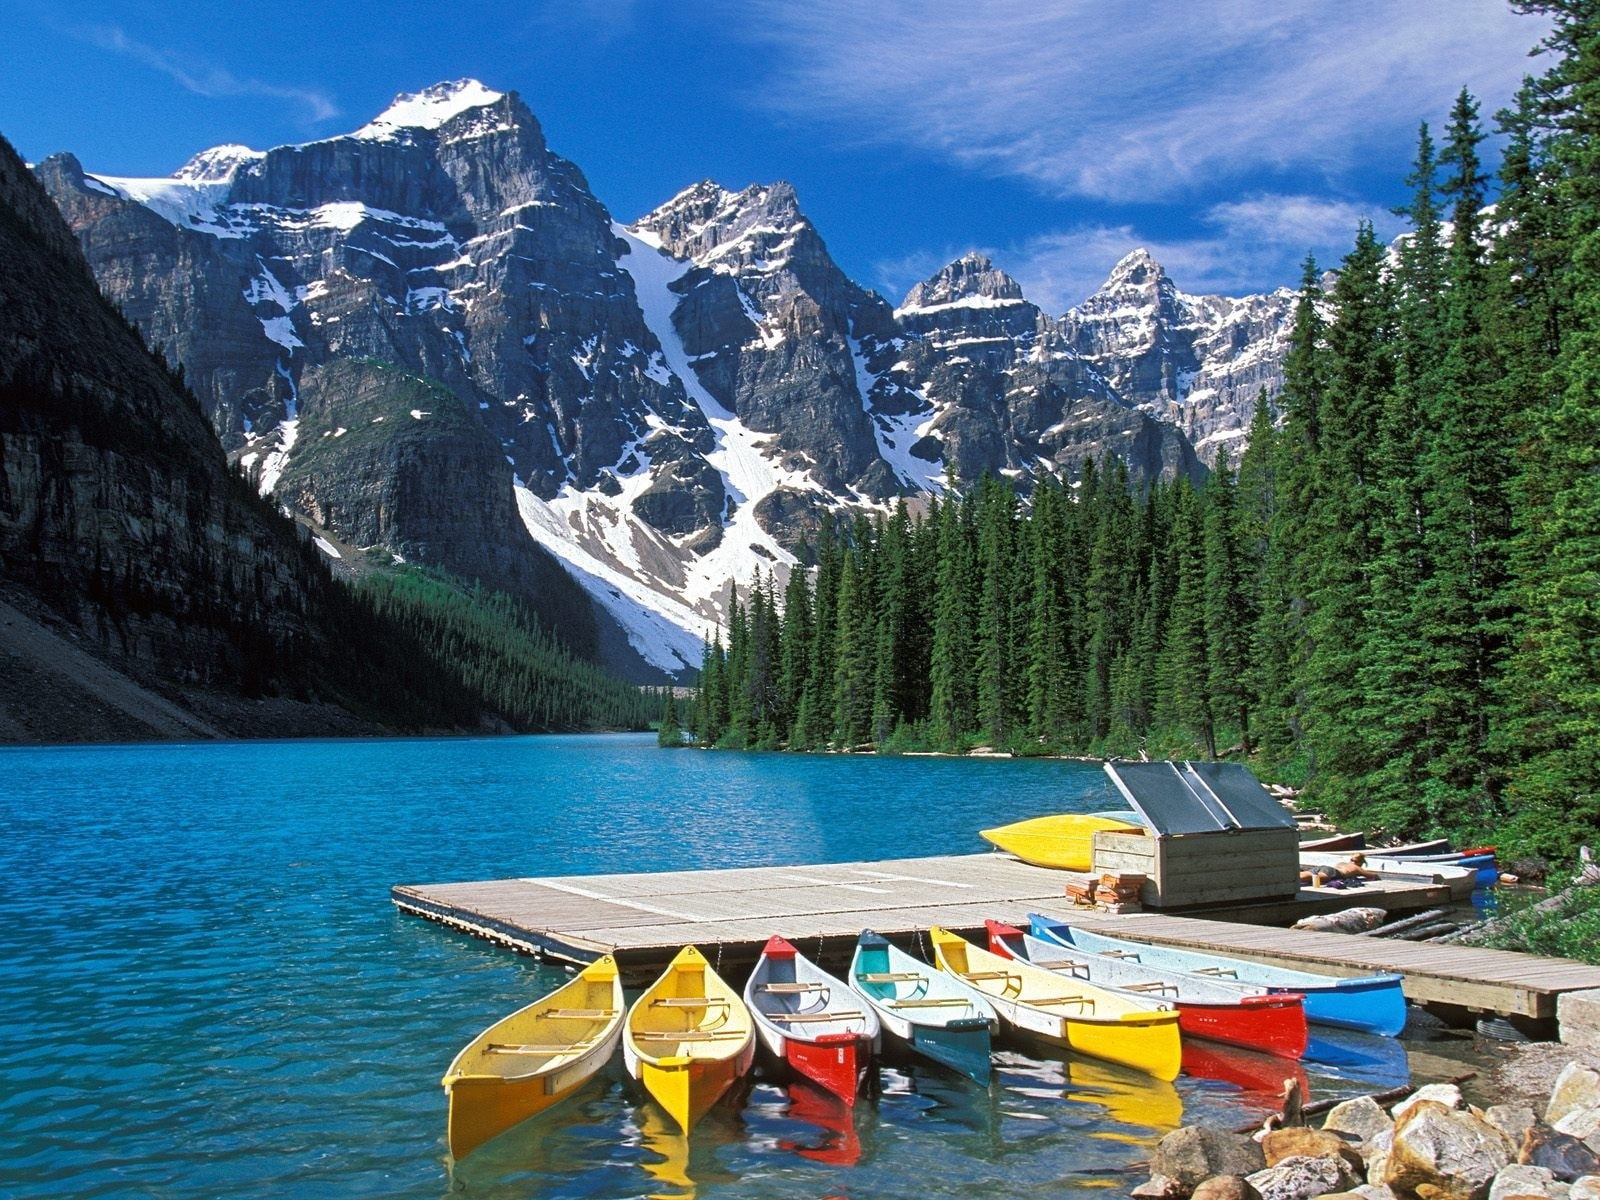 Moraine lake, Boats, Canada, Multi-colored, Excursions, mountain